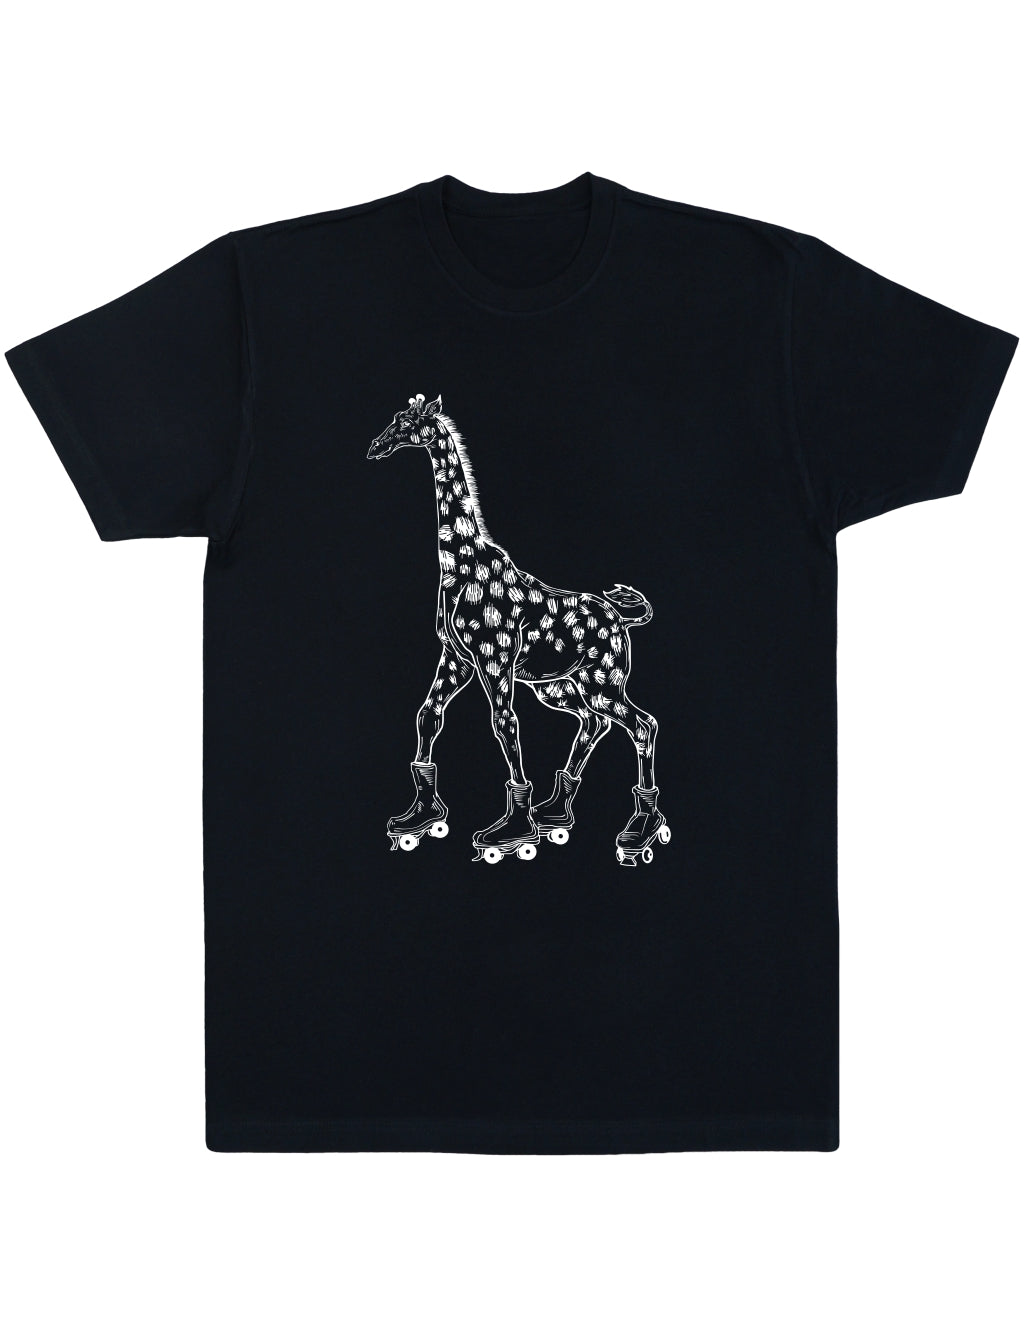 SEEMBO Giraffe Funny Skater Animal Skating Roller Skates Unisex Cotton T-Shirt